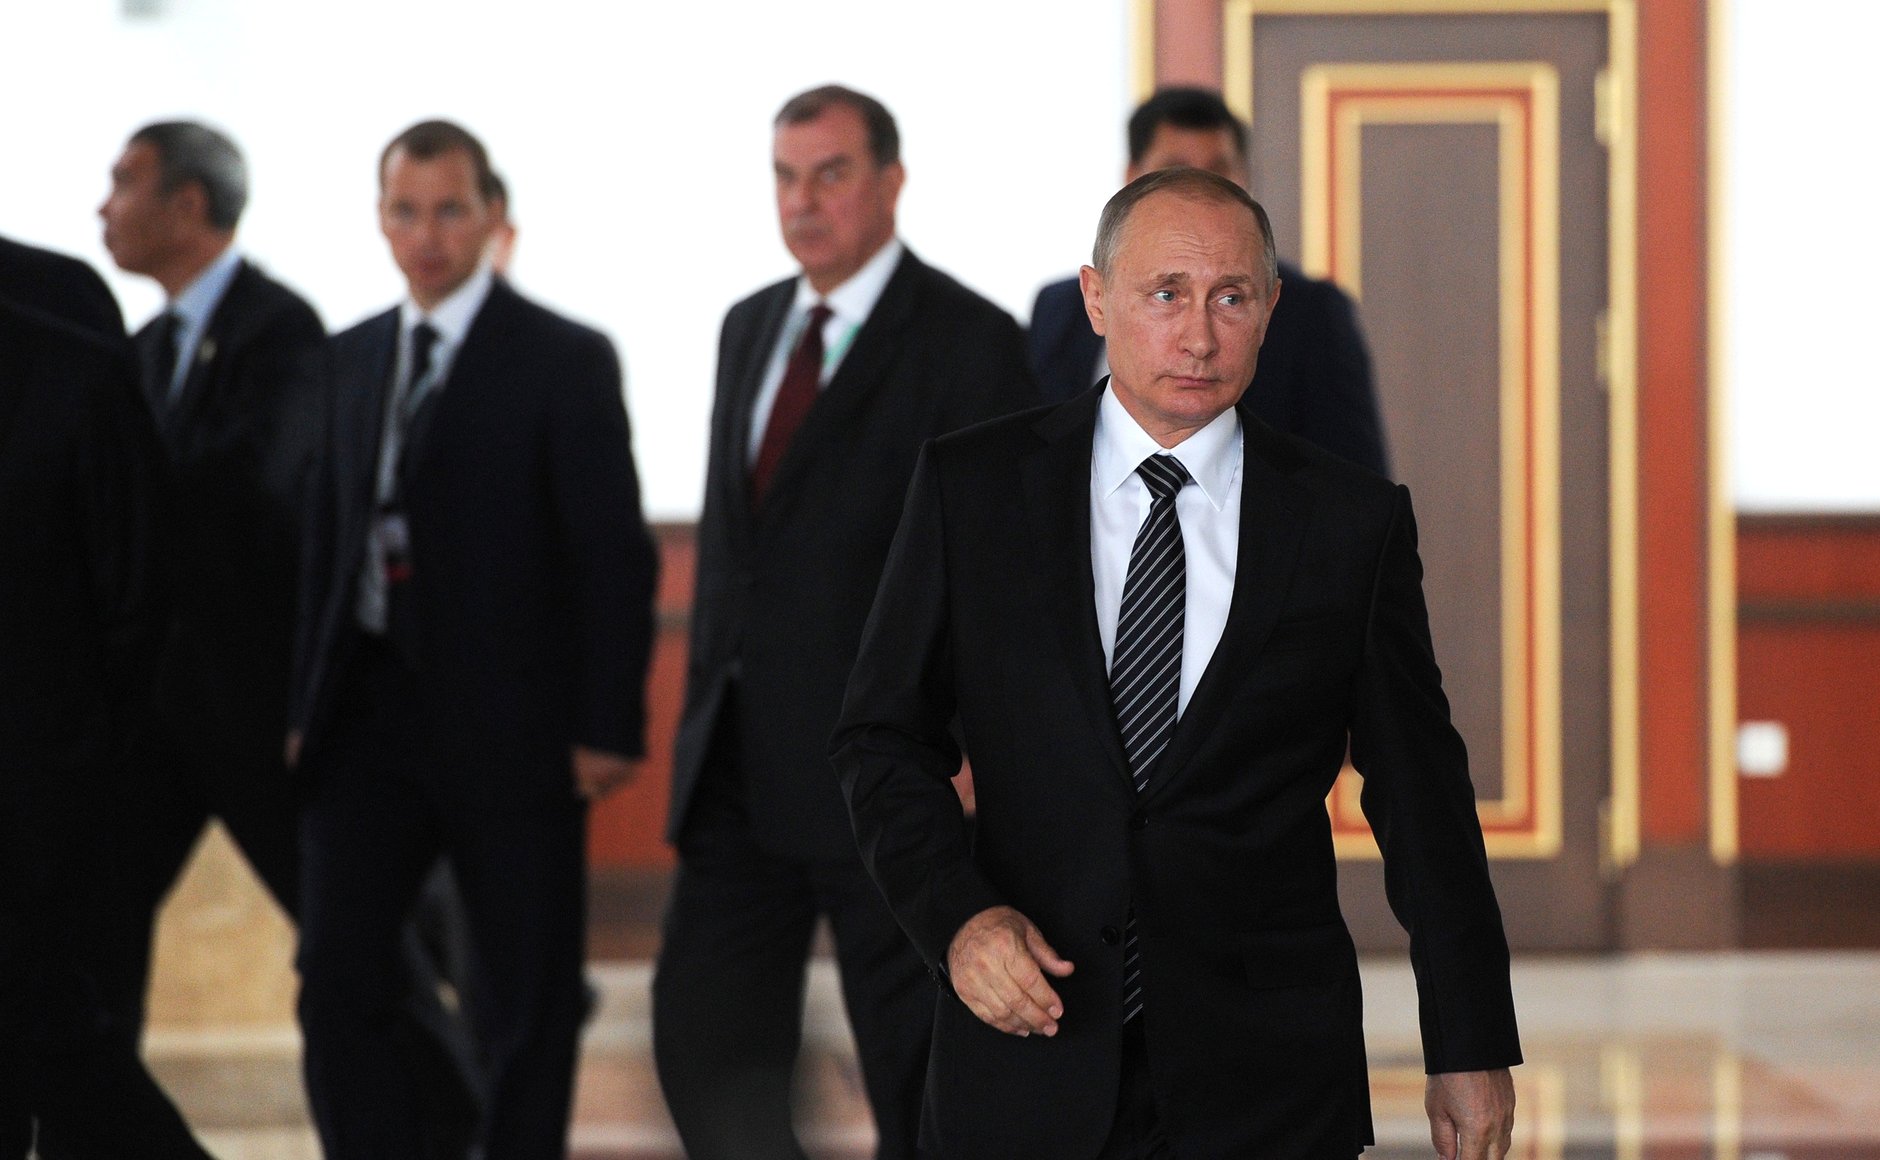 Заслуги и перспективы СНГ: Путин о Содружестве Независимых Государств